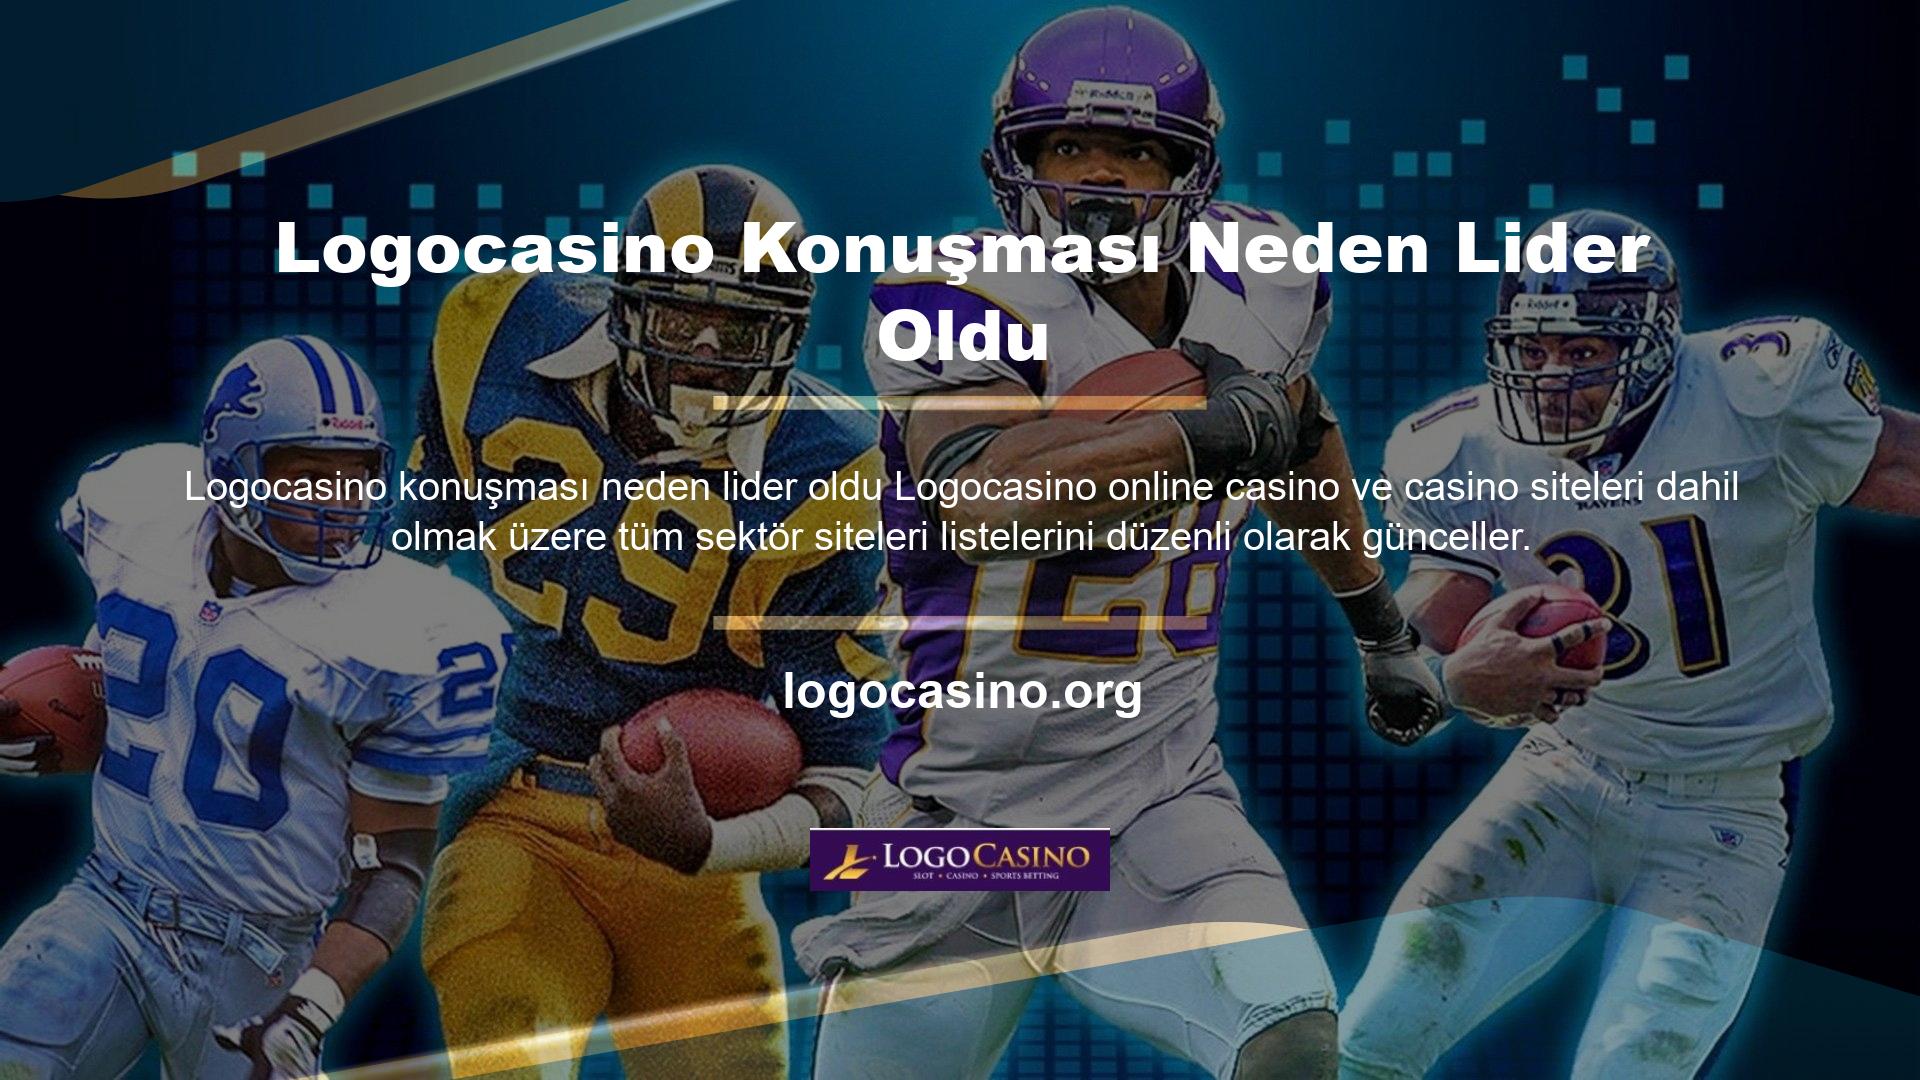 Logocasino site adresinin güncellenmesinin temel sebebi, üyelerin siteye sınırsız erişimini sağlamaktır